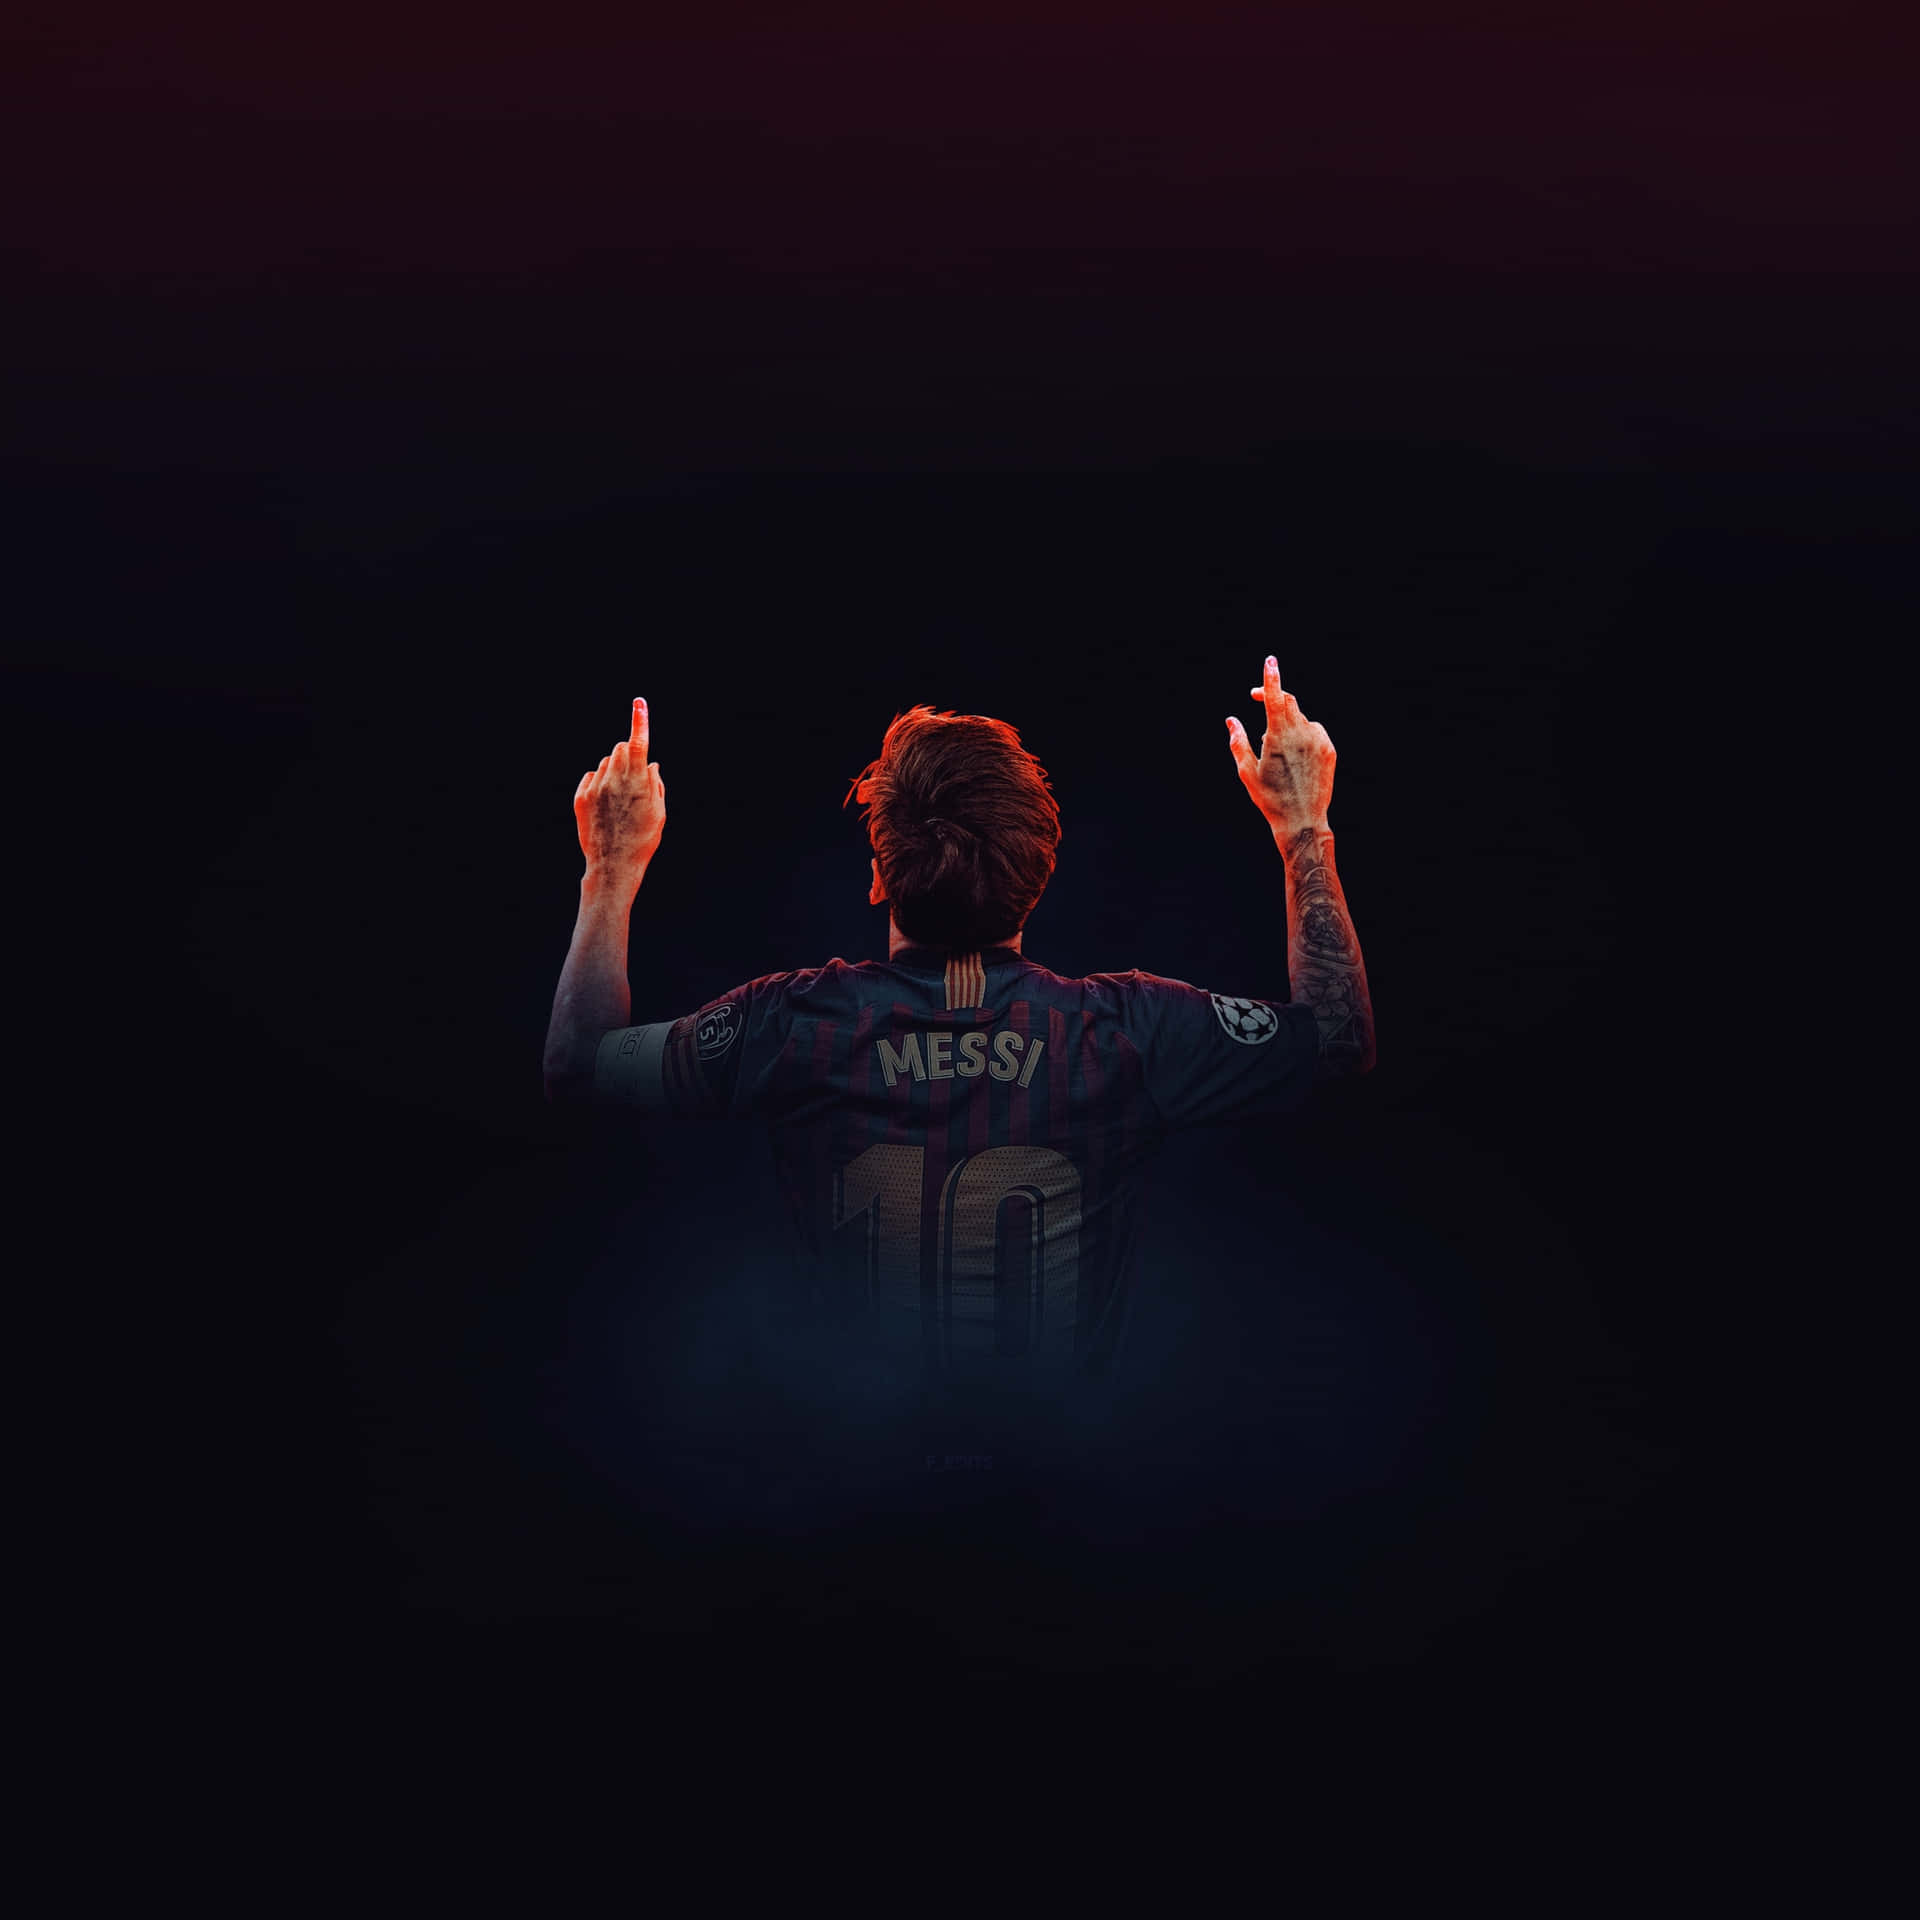 Siehedie Coolste Version Von Lionel Messi. Wallpaper